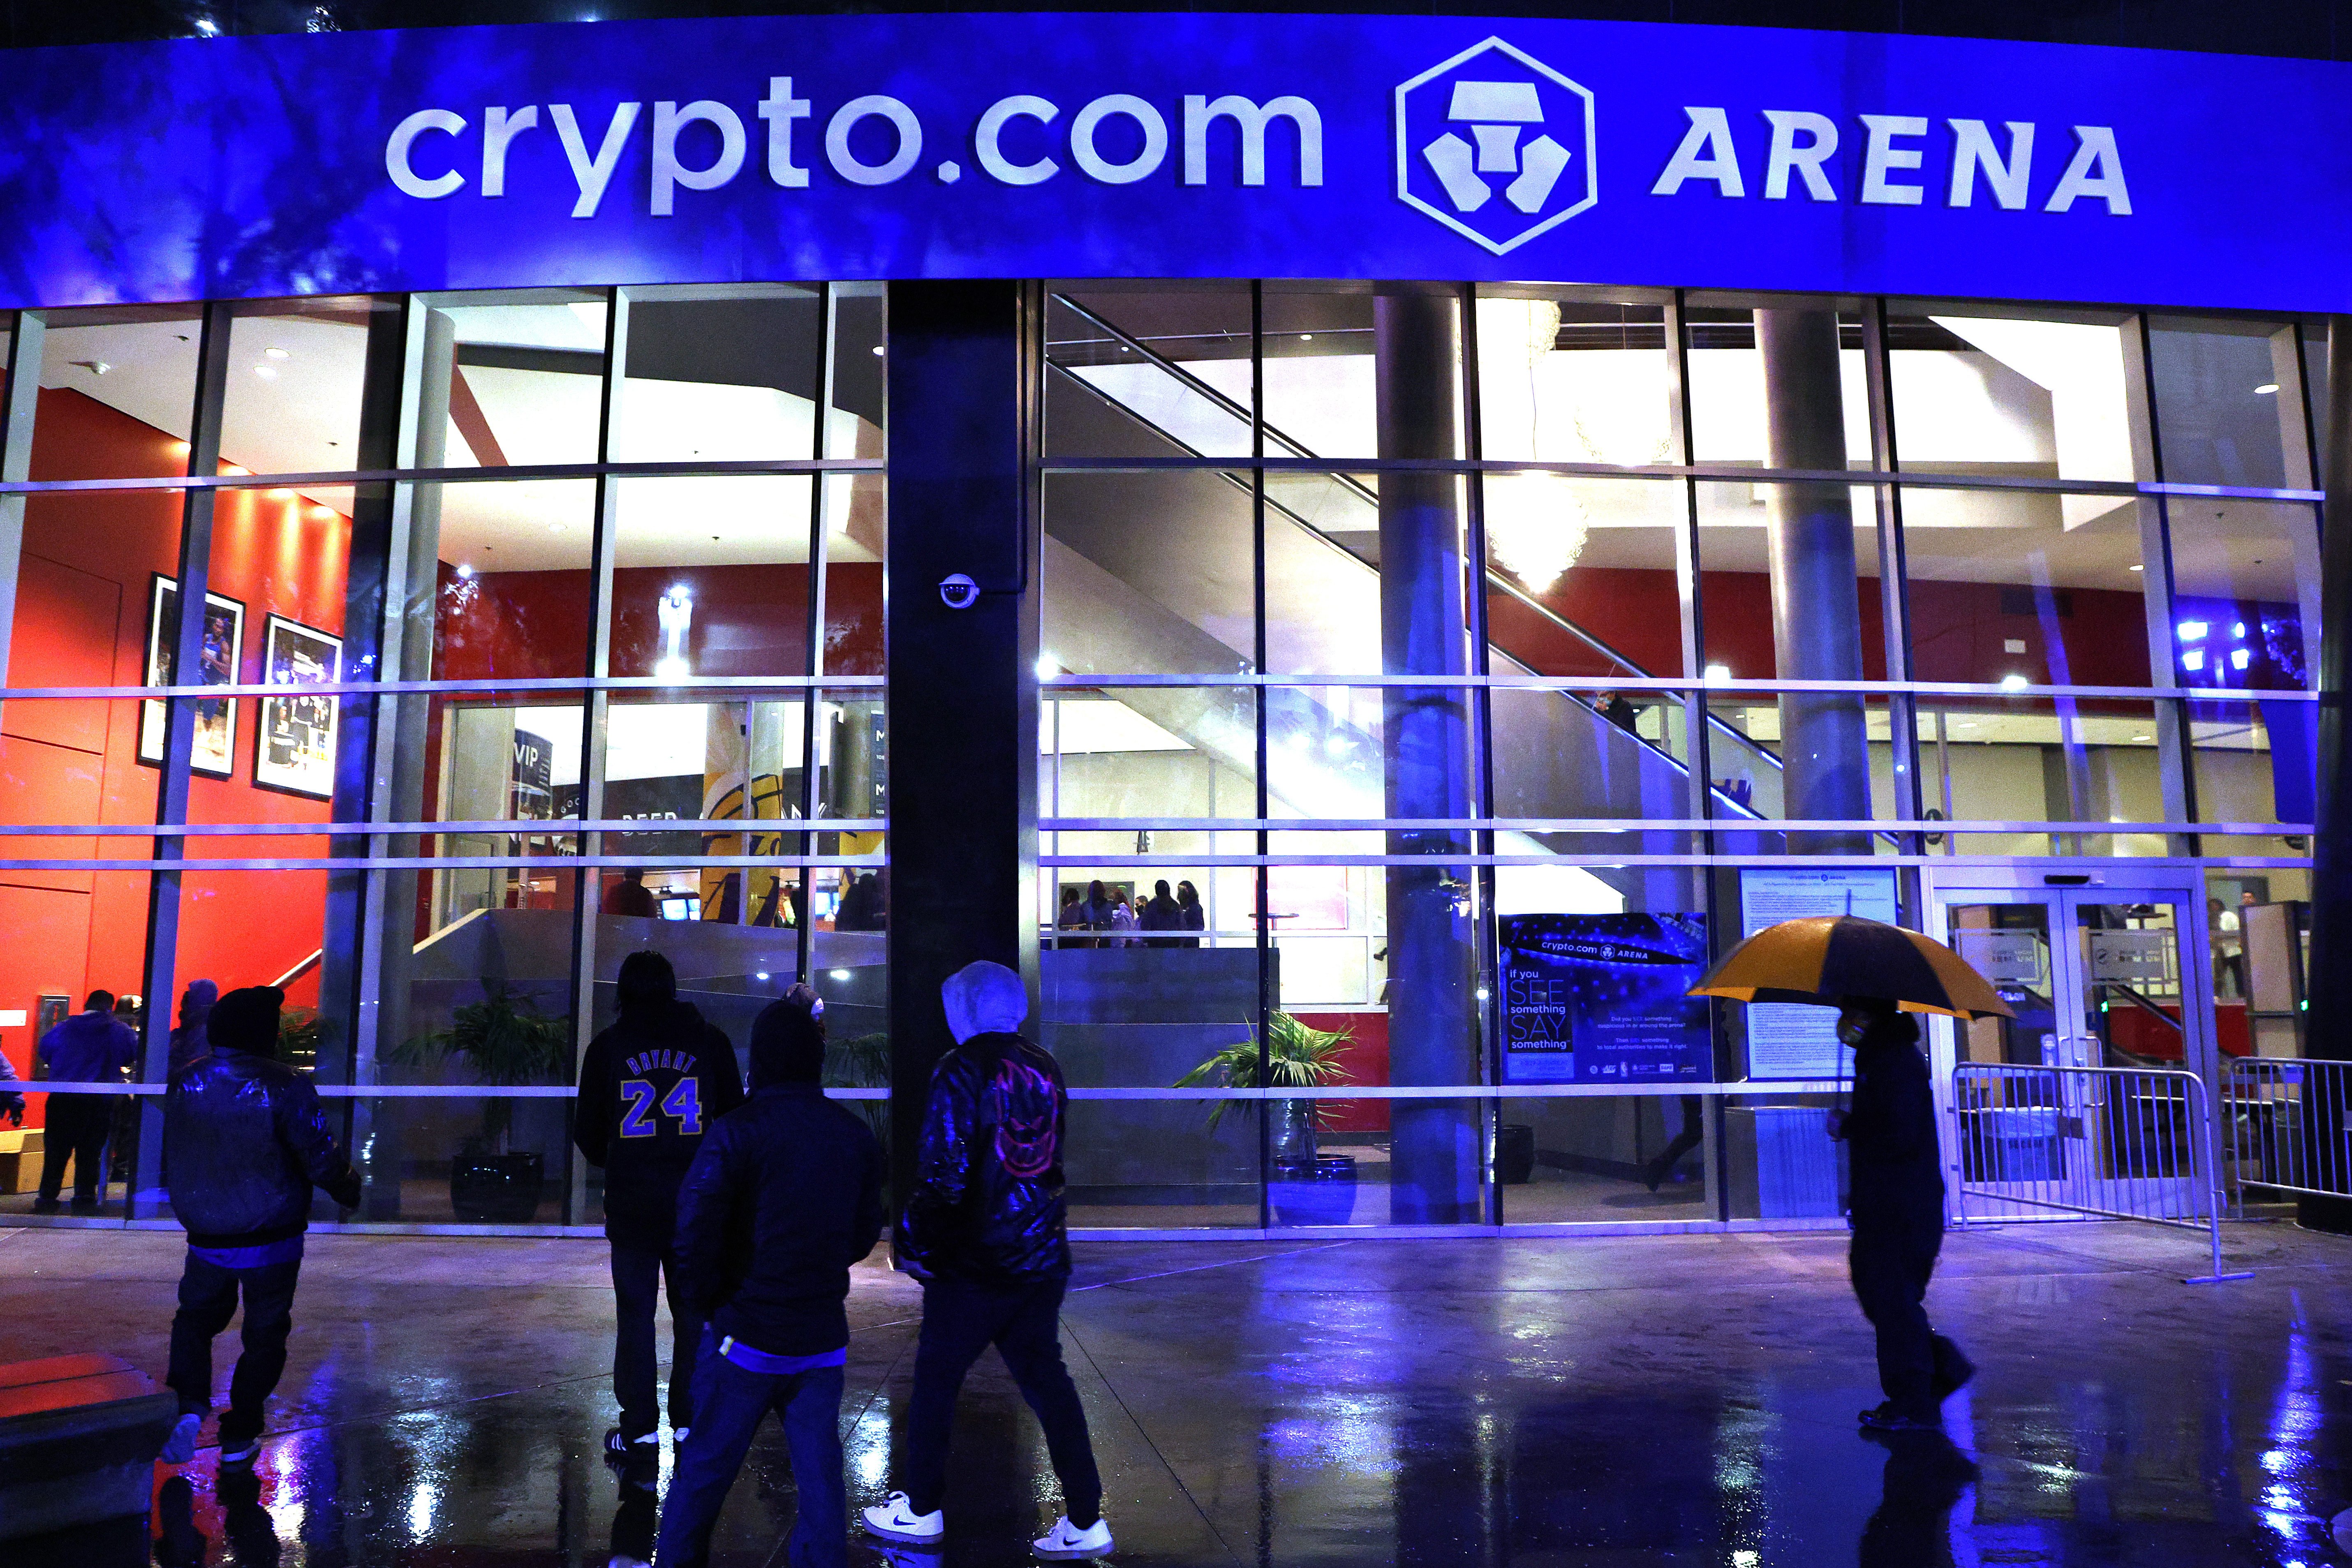 Lakers home to drop Staples Center, become Crypto.com Arena - NBC